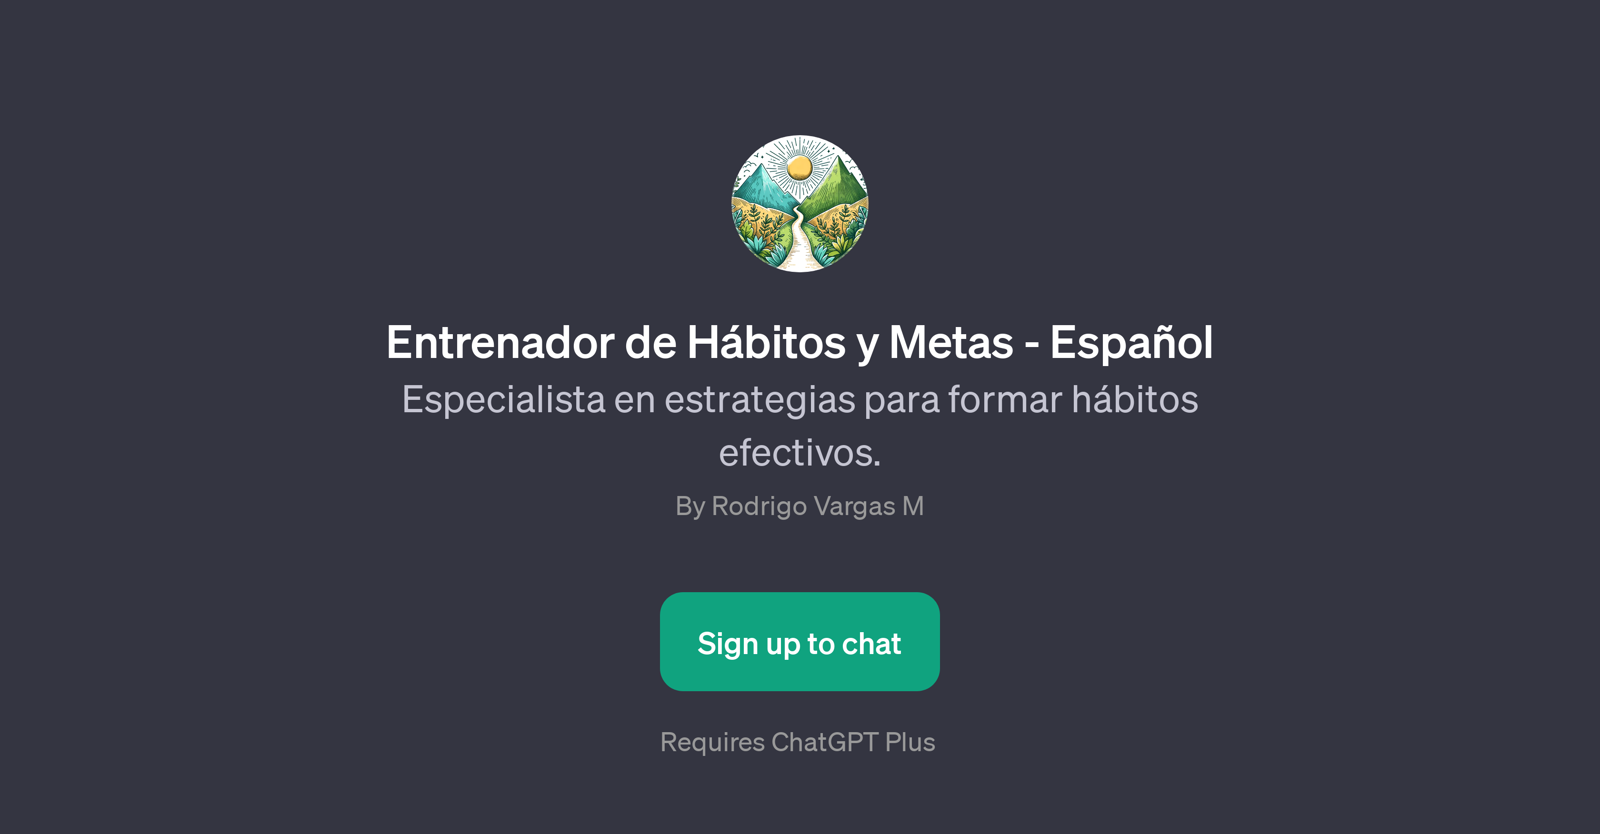 Entrenador de Hbitos y Metas - Espaol website